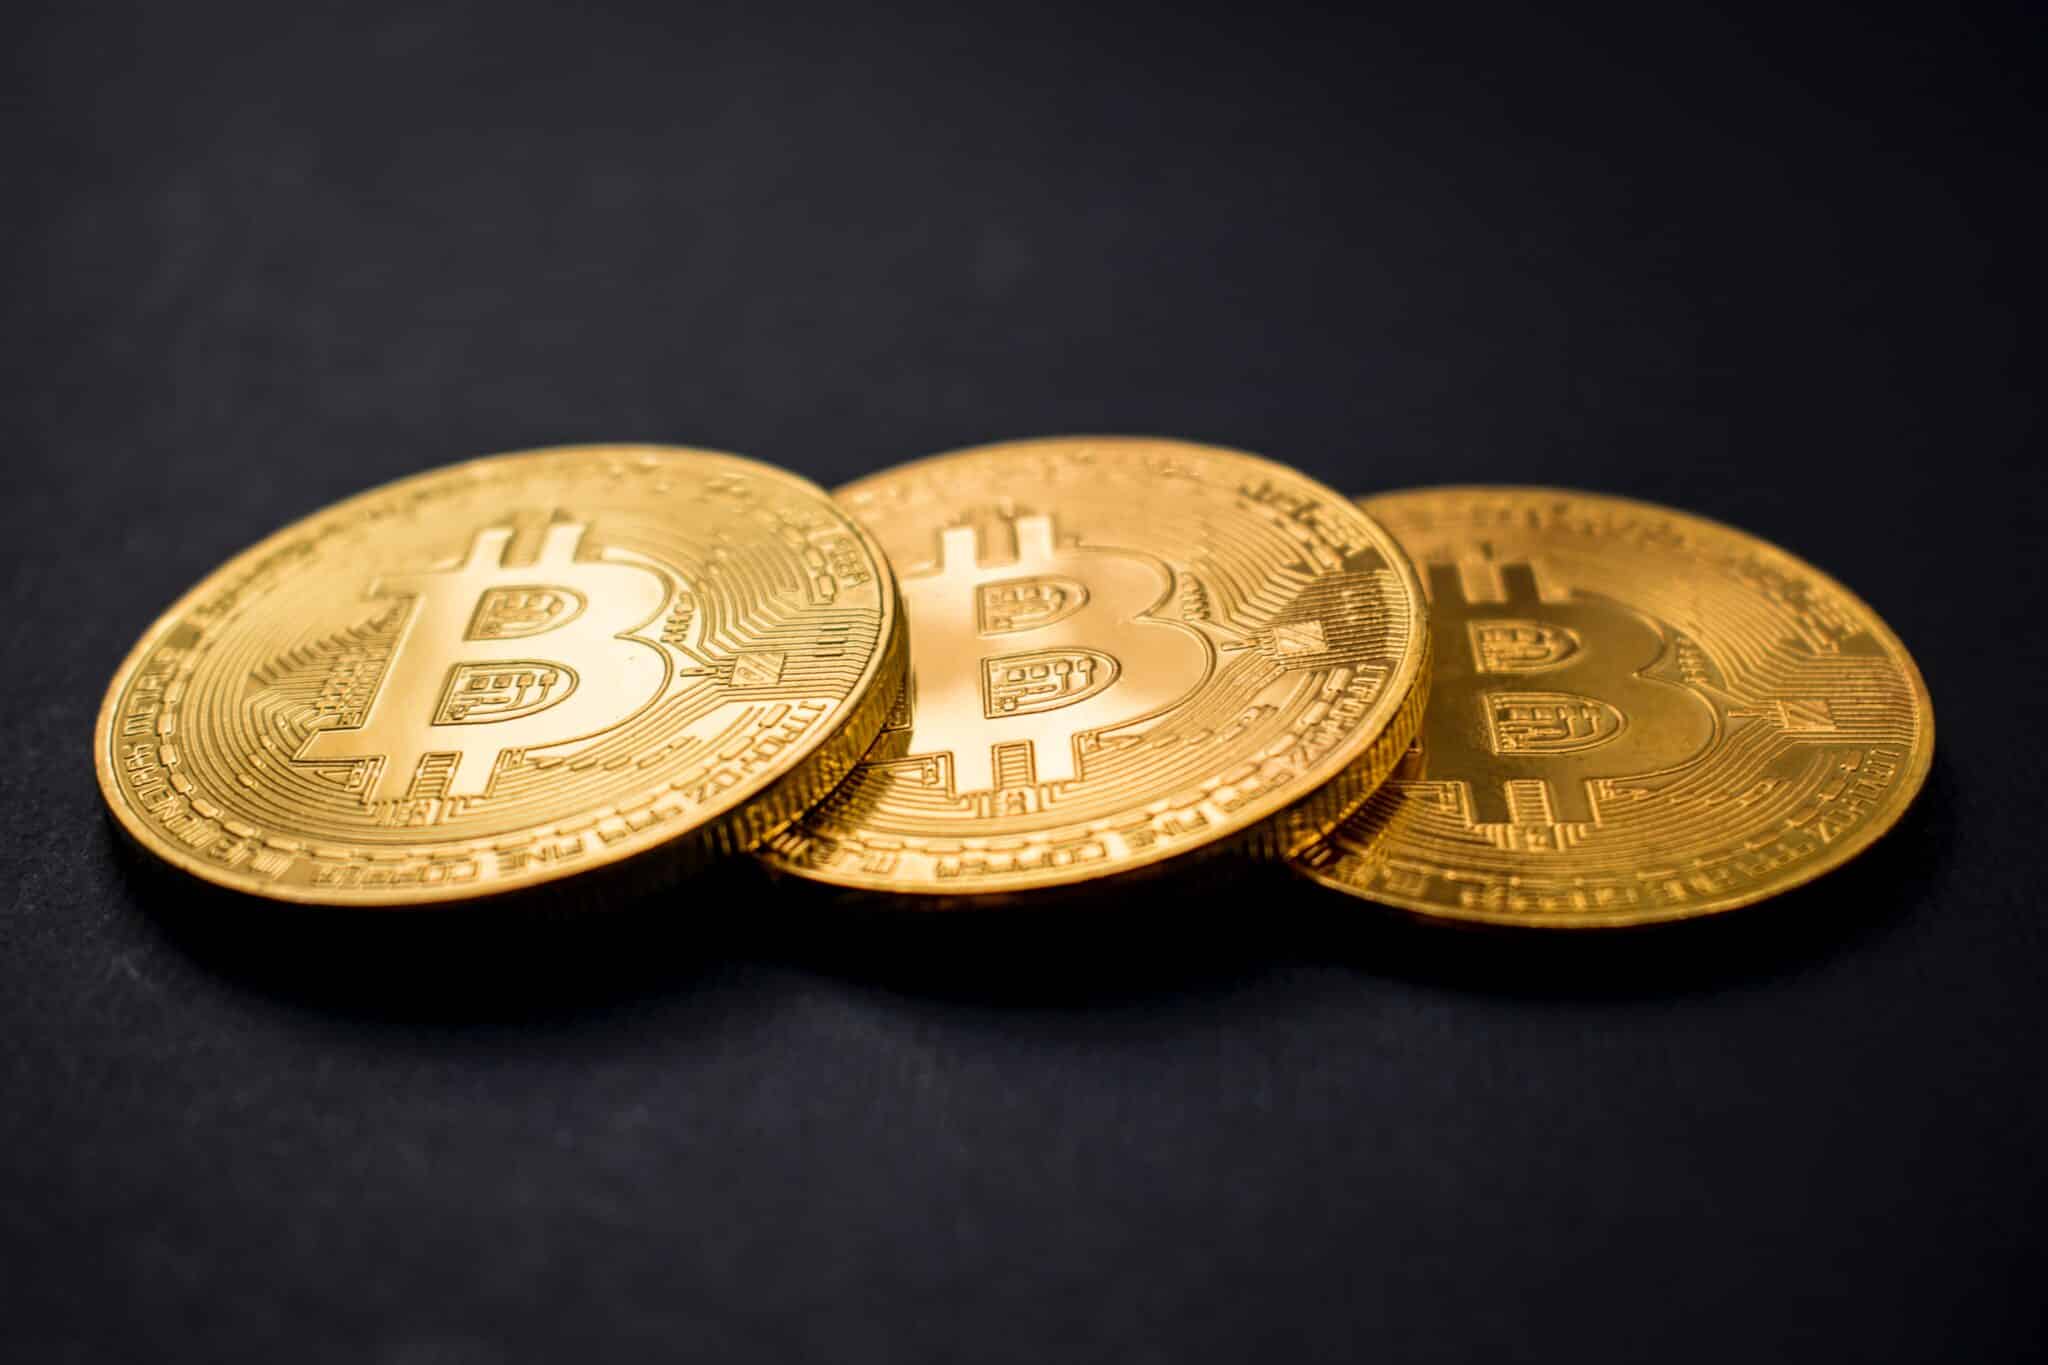 3 coins of bitcoin